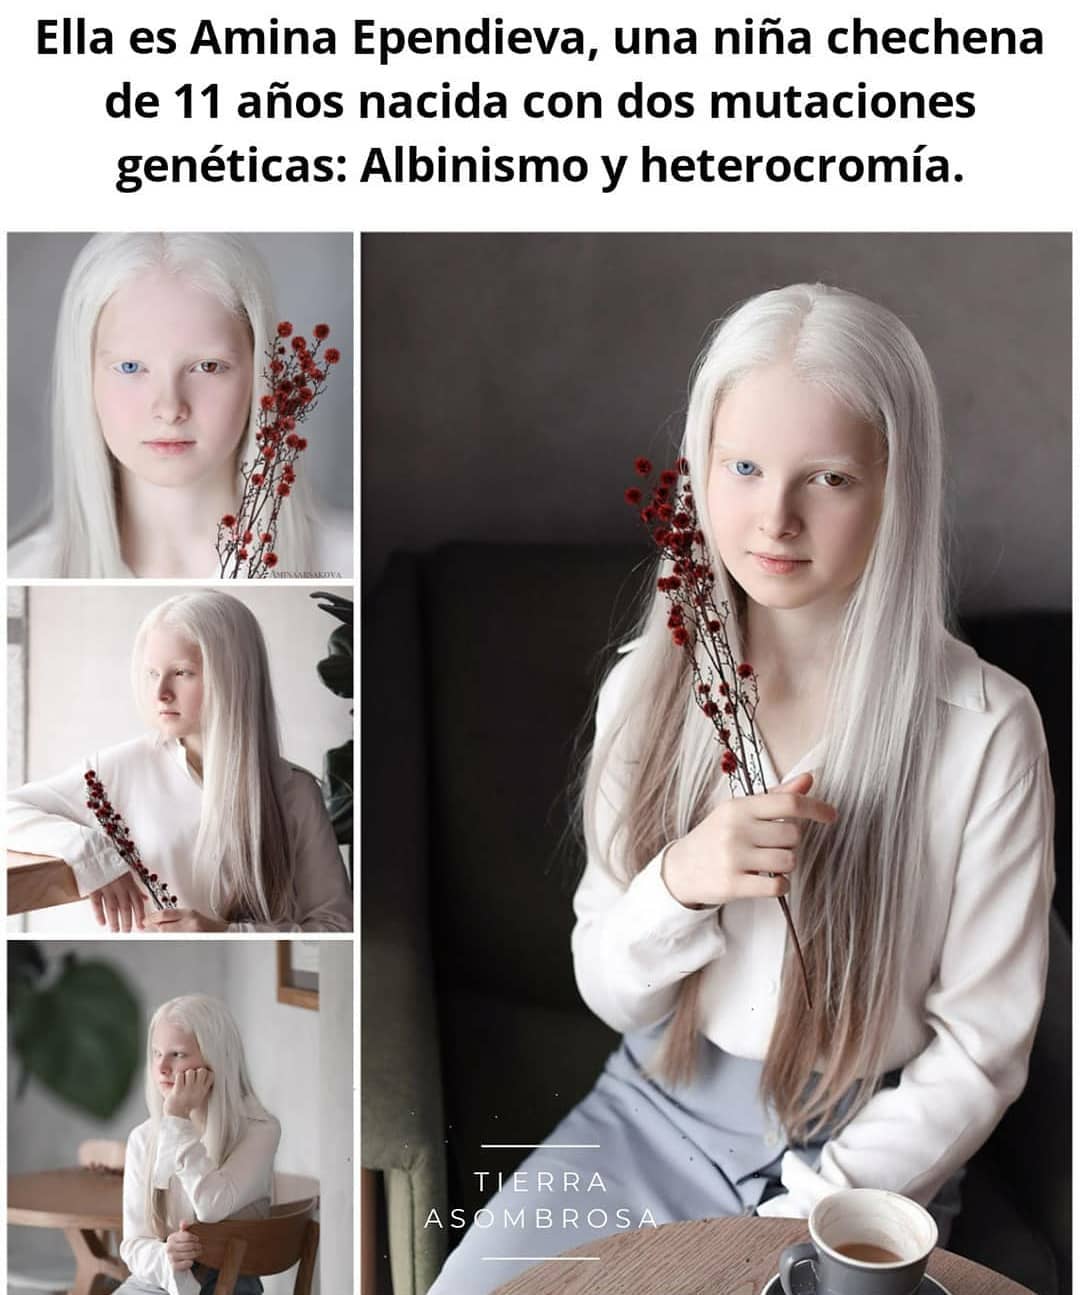 Ella es Amina Ependieva, una niña chechena de 11 años nacida con dos mutaciones genéticas: Albinismo y heterocromía.